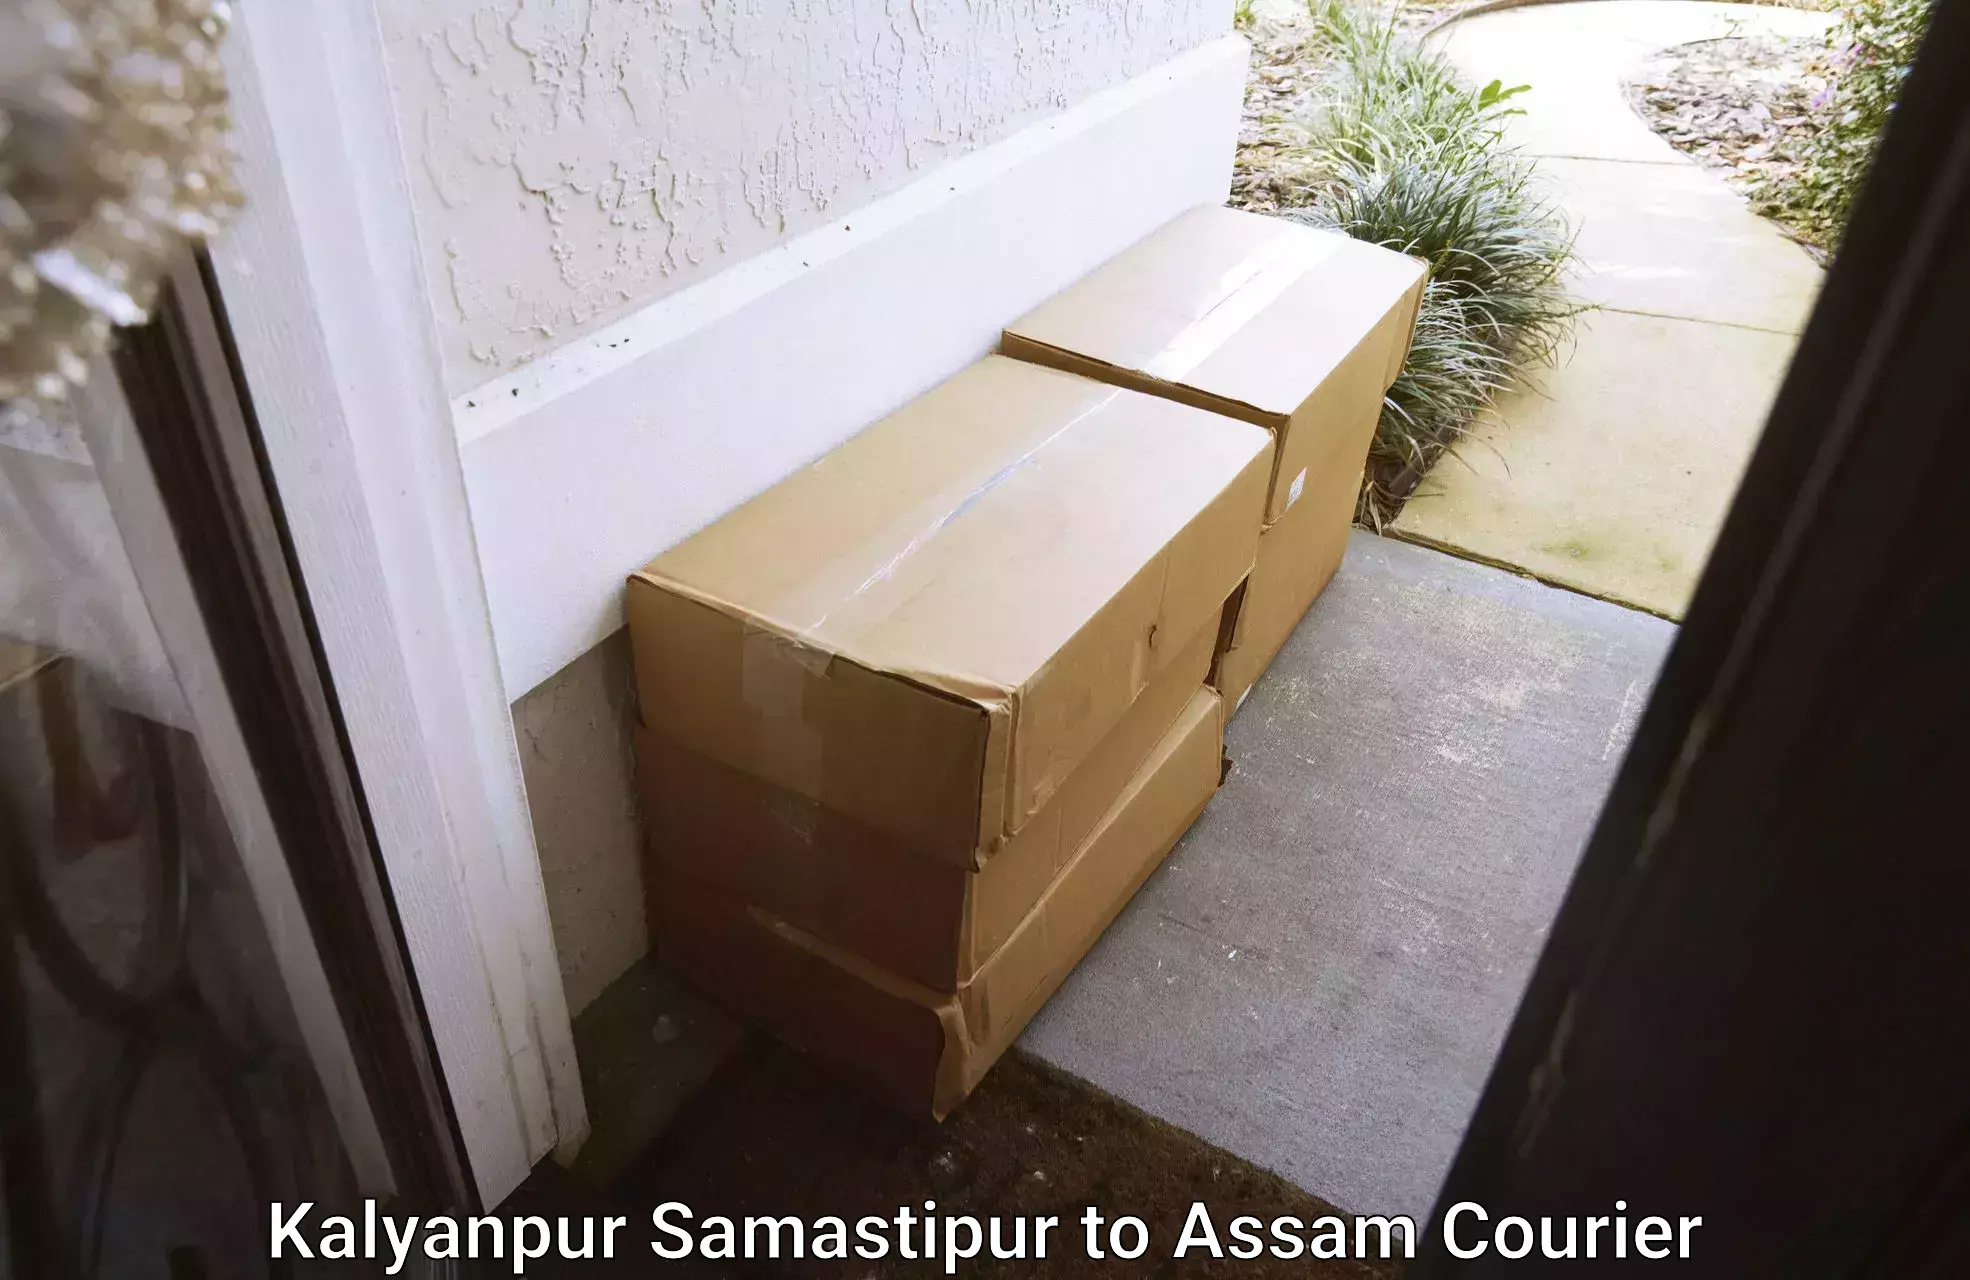 Furniture transport and storage Kalyanpur Samastipur to Sonitpur